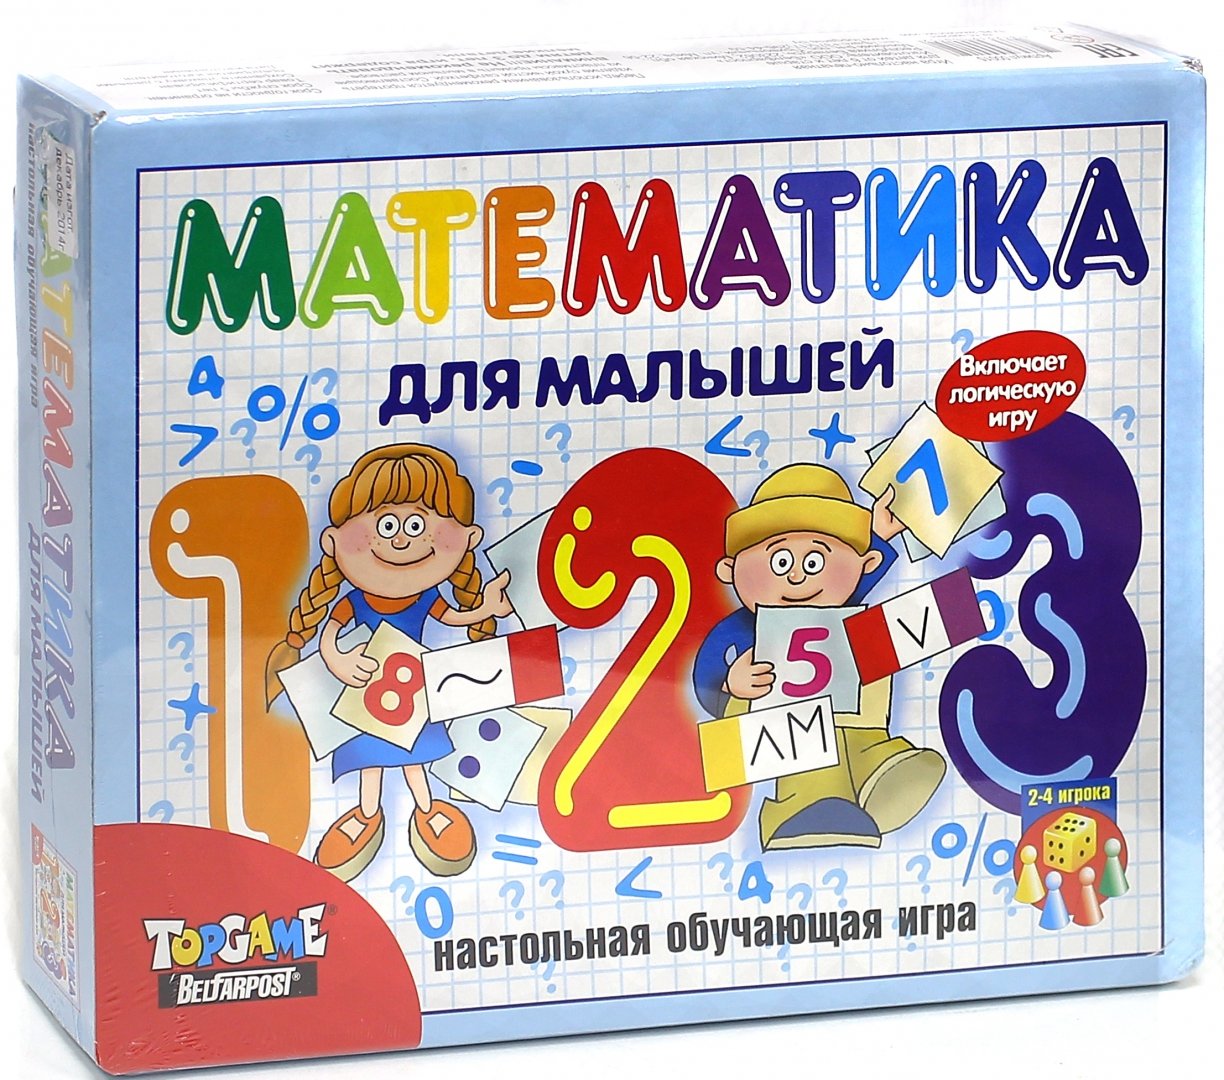 Игры математички. Математические настольные игры. Развивающая настольная игра. Математические настольные игры для детей. Игрушки математика для дошкольников.